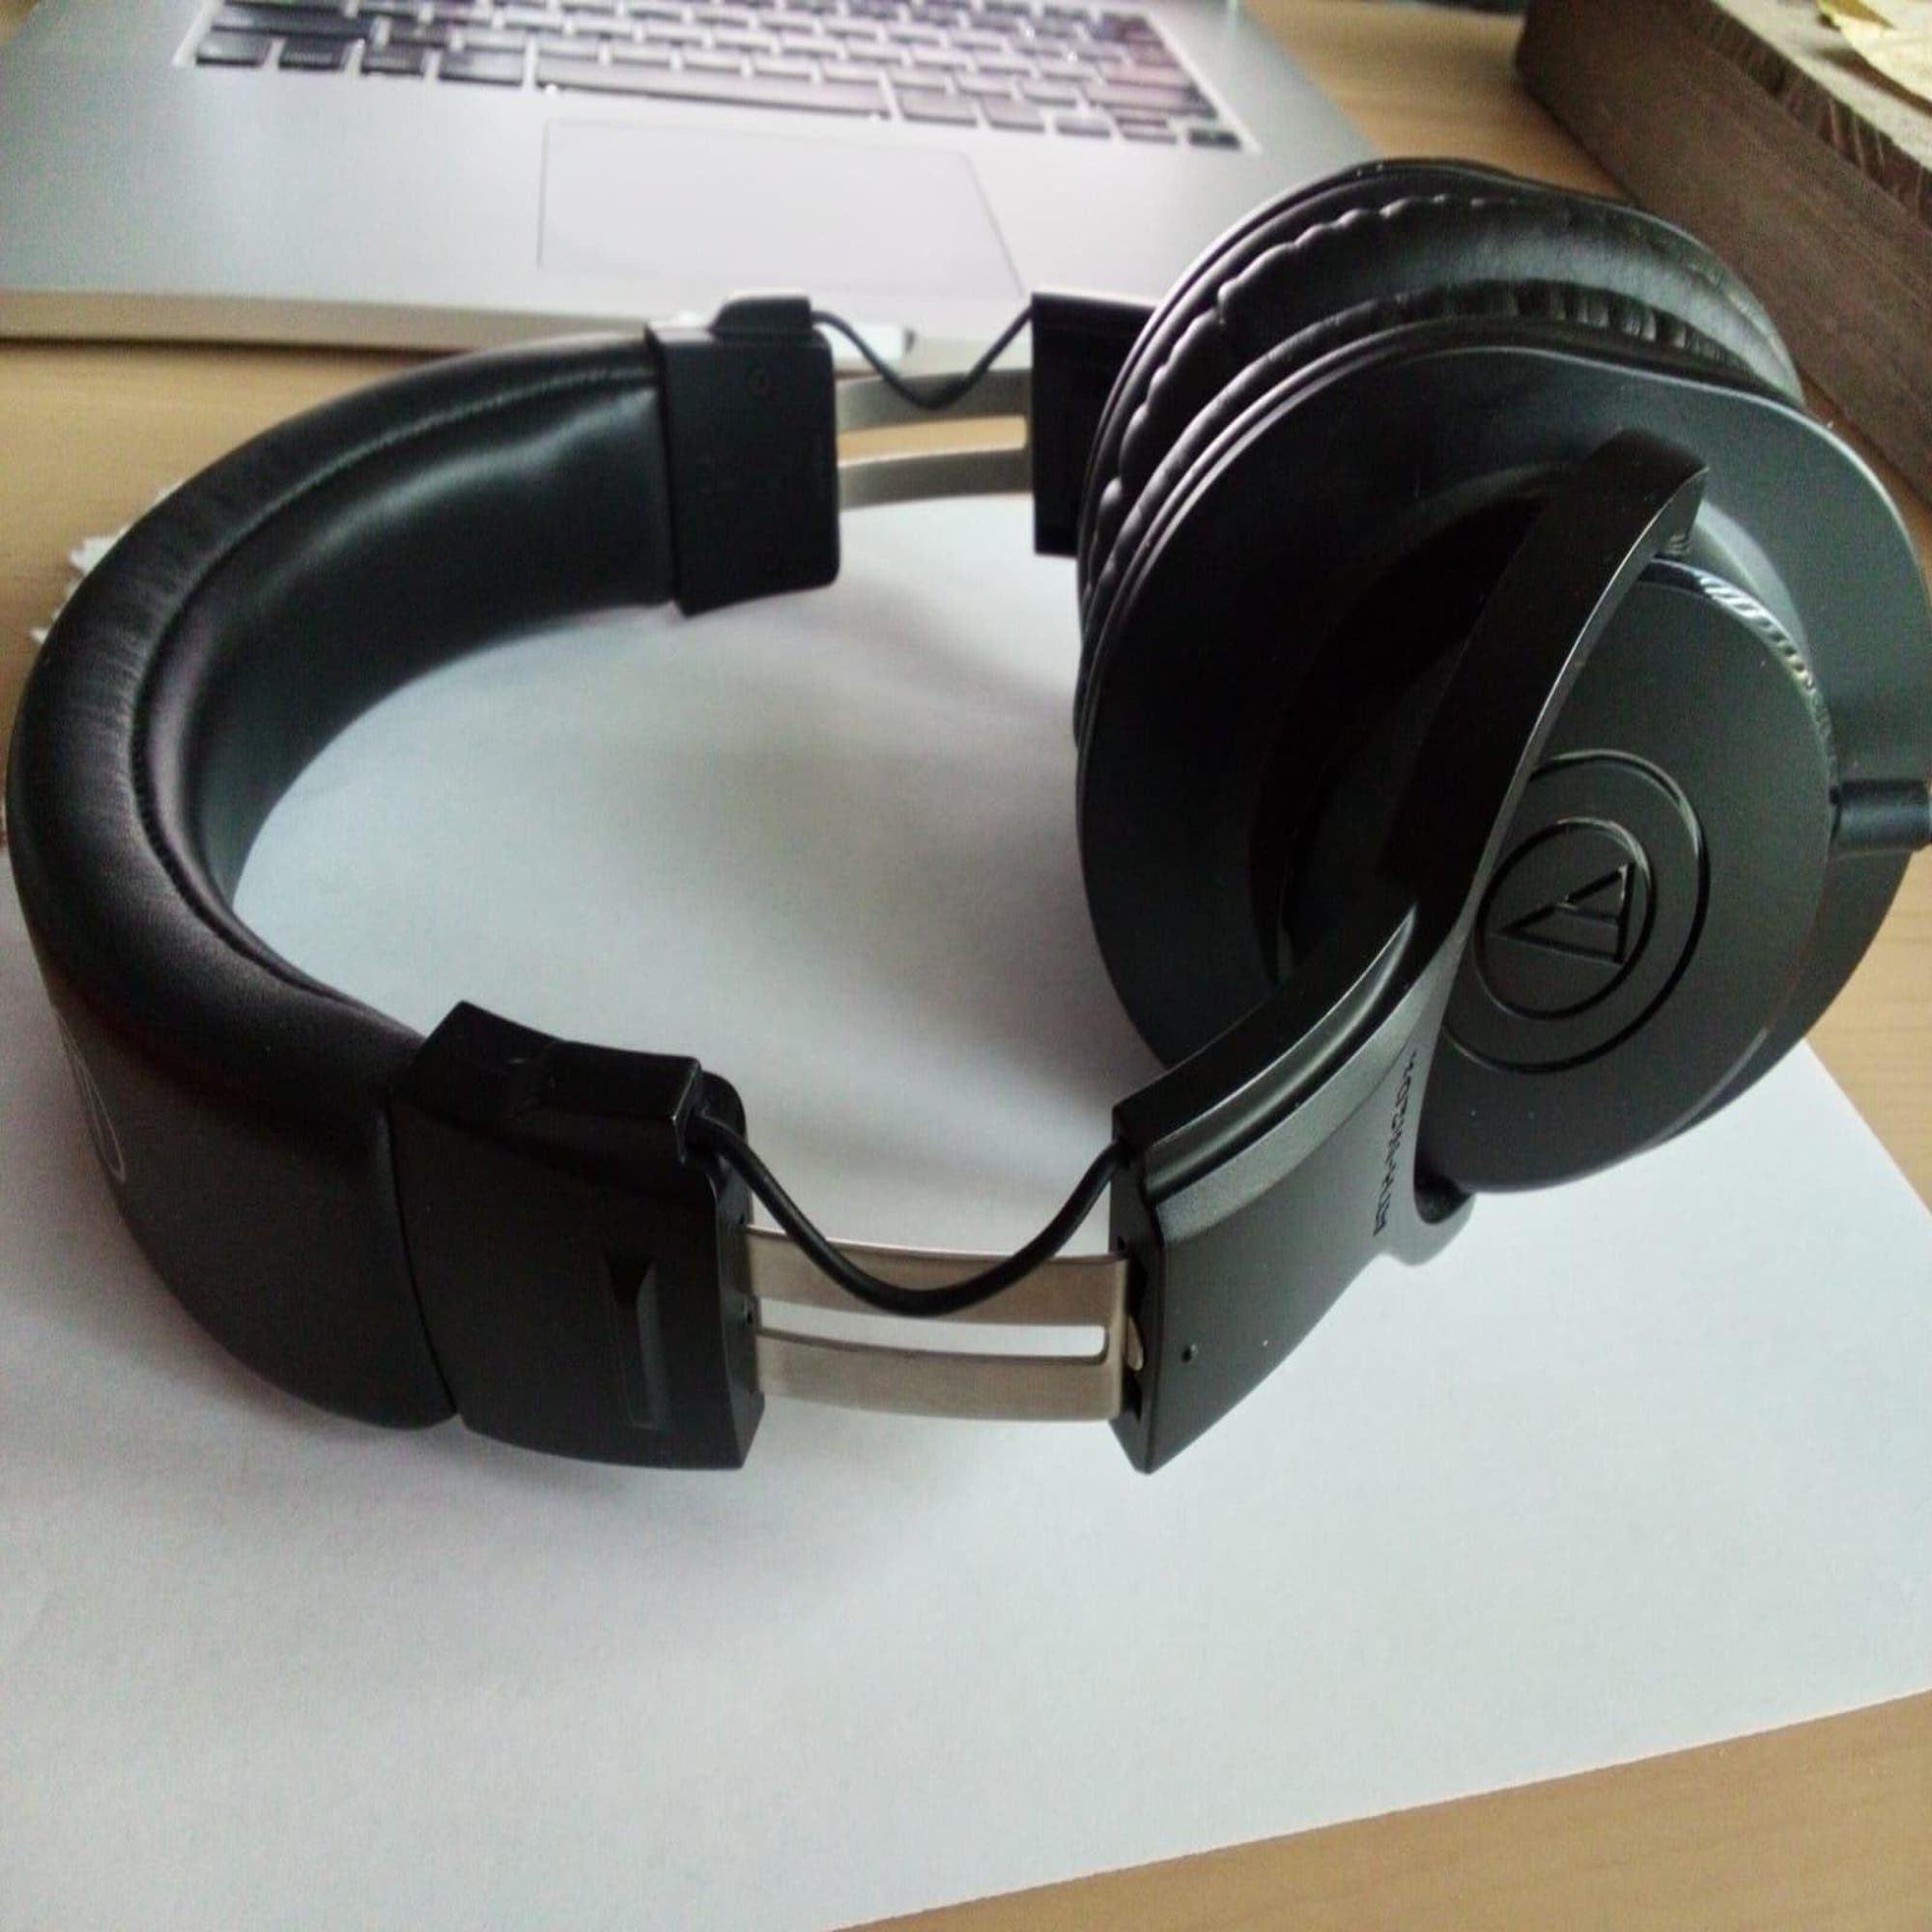 Audio-Technica - Gears For Ears